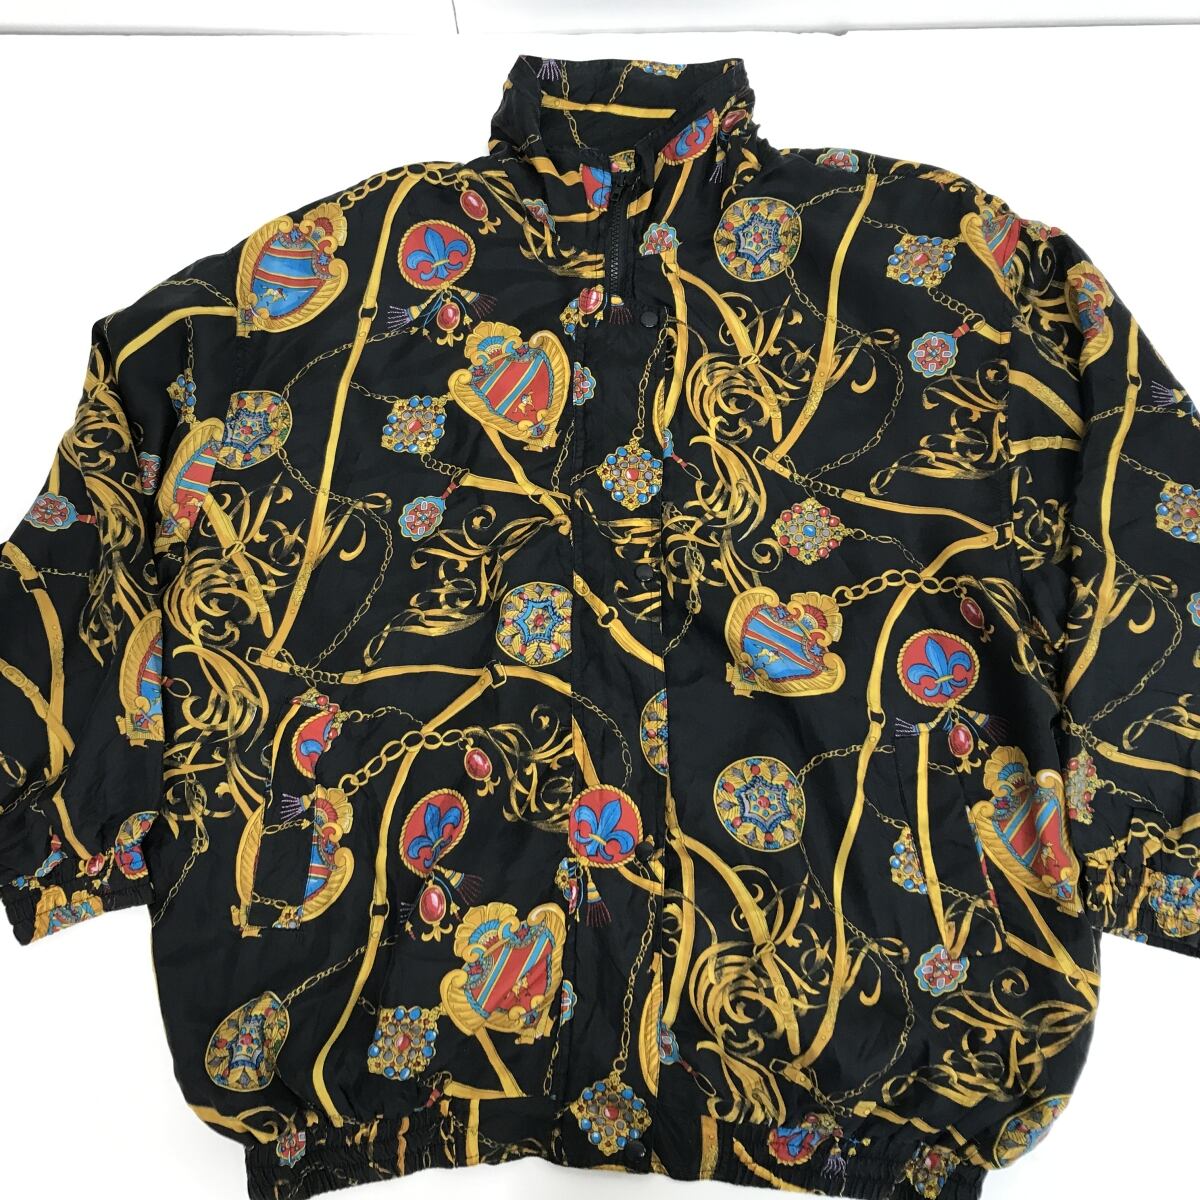 DETAILS SPORTSWEAR 80〜 90年代 総柄 スカーフ柄 シルク ジャンパー シルク ブルゾン シルク ジャケット L 長袖